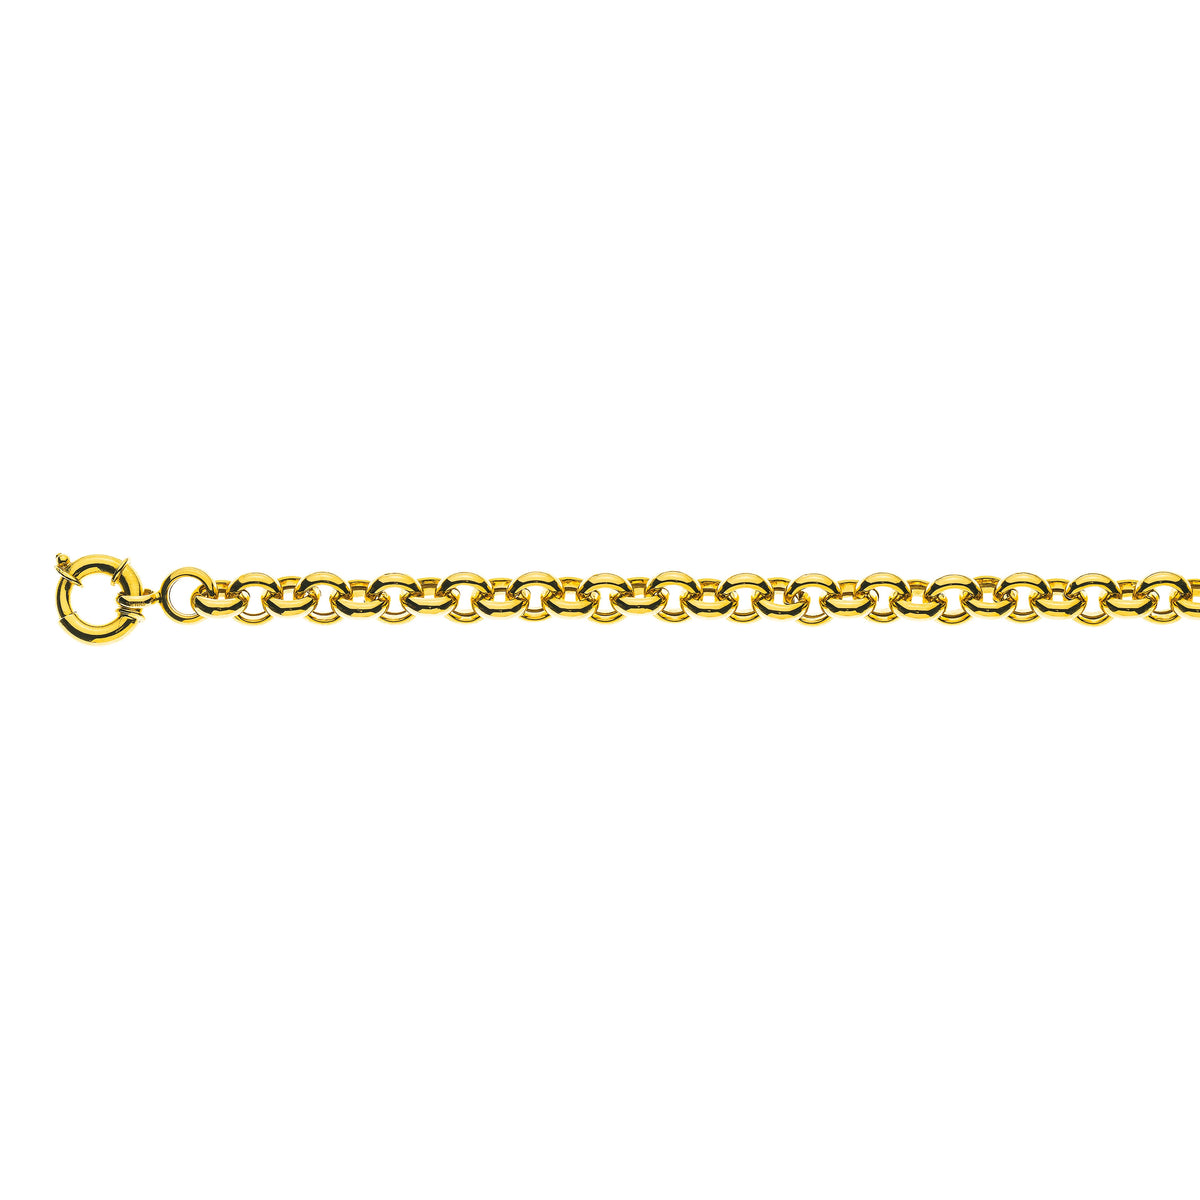 Halbmassive Erbs-Halskette aus 750er Gelbgold, ca. 9 mm